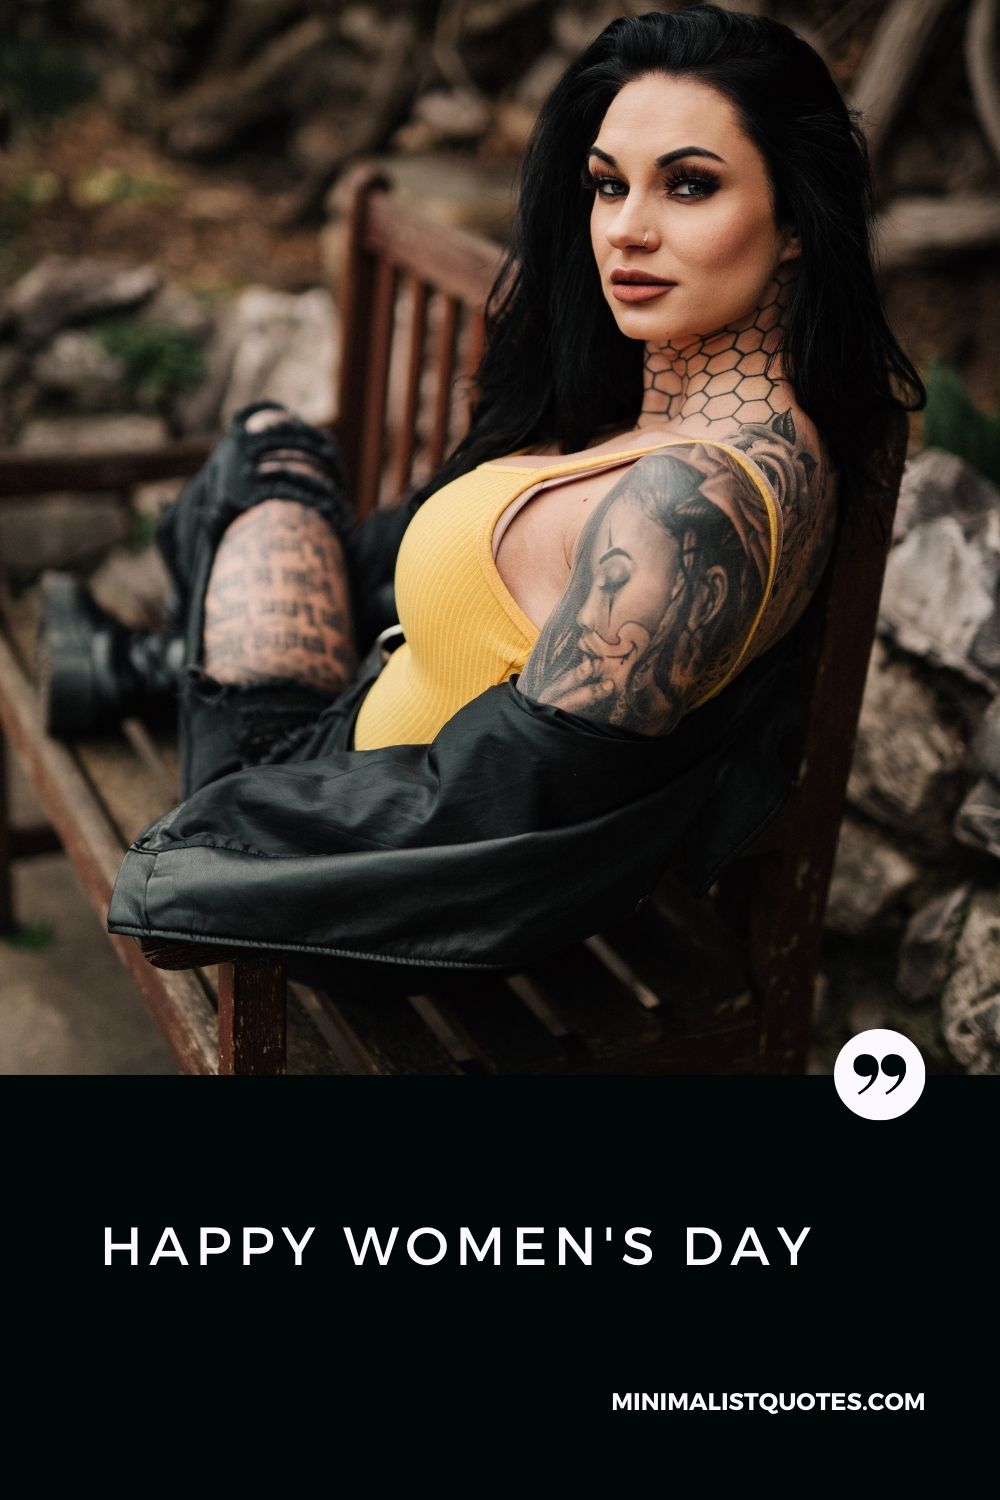 Happy Women's Day Wish & HD Poster Image: #stylishwoman